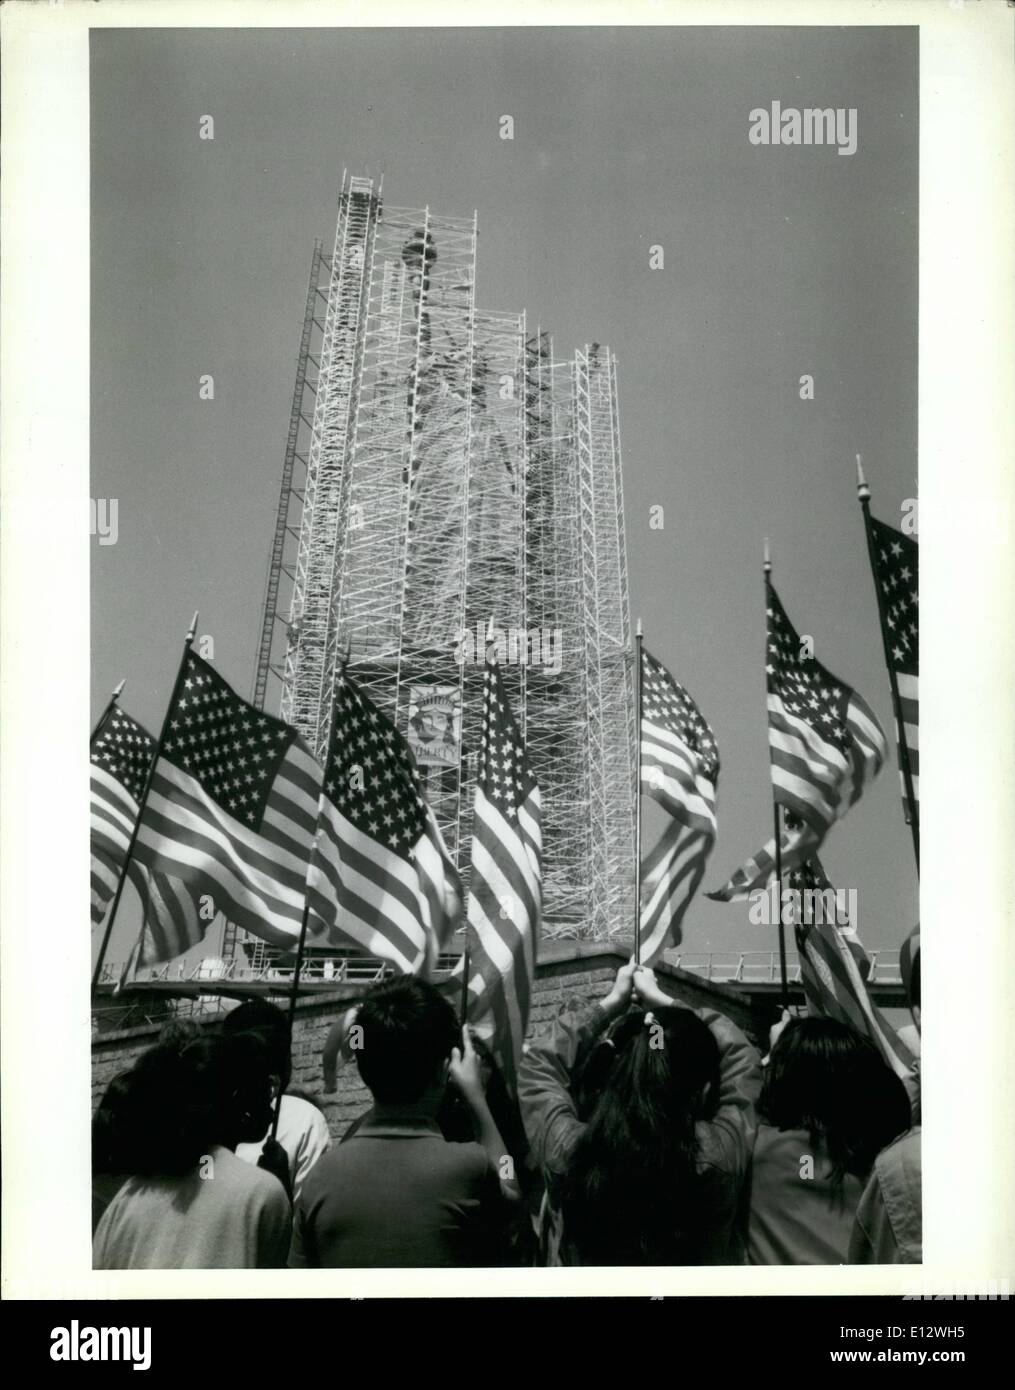 25 février 2012 - Statue de la liberté fête juillet 1984. La couleur. Obstruée par un échafaudage. Les enfants à l'école tenant des drapeaux américains en vue de face. (Photo : c 1984 Jill Goldhamer pour la Statue de Liberty-Ellis Island Foundation. Banque D'Images